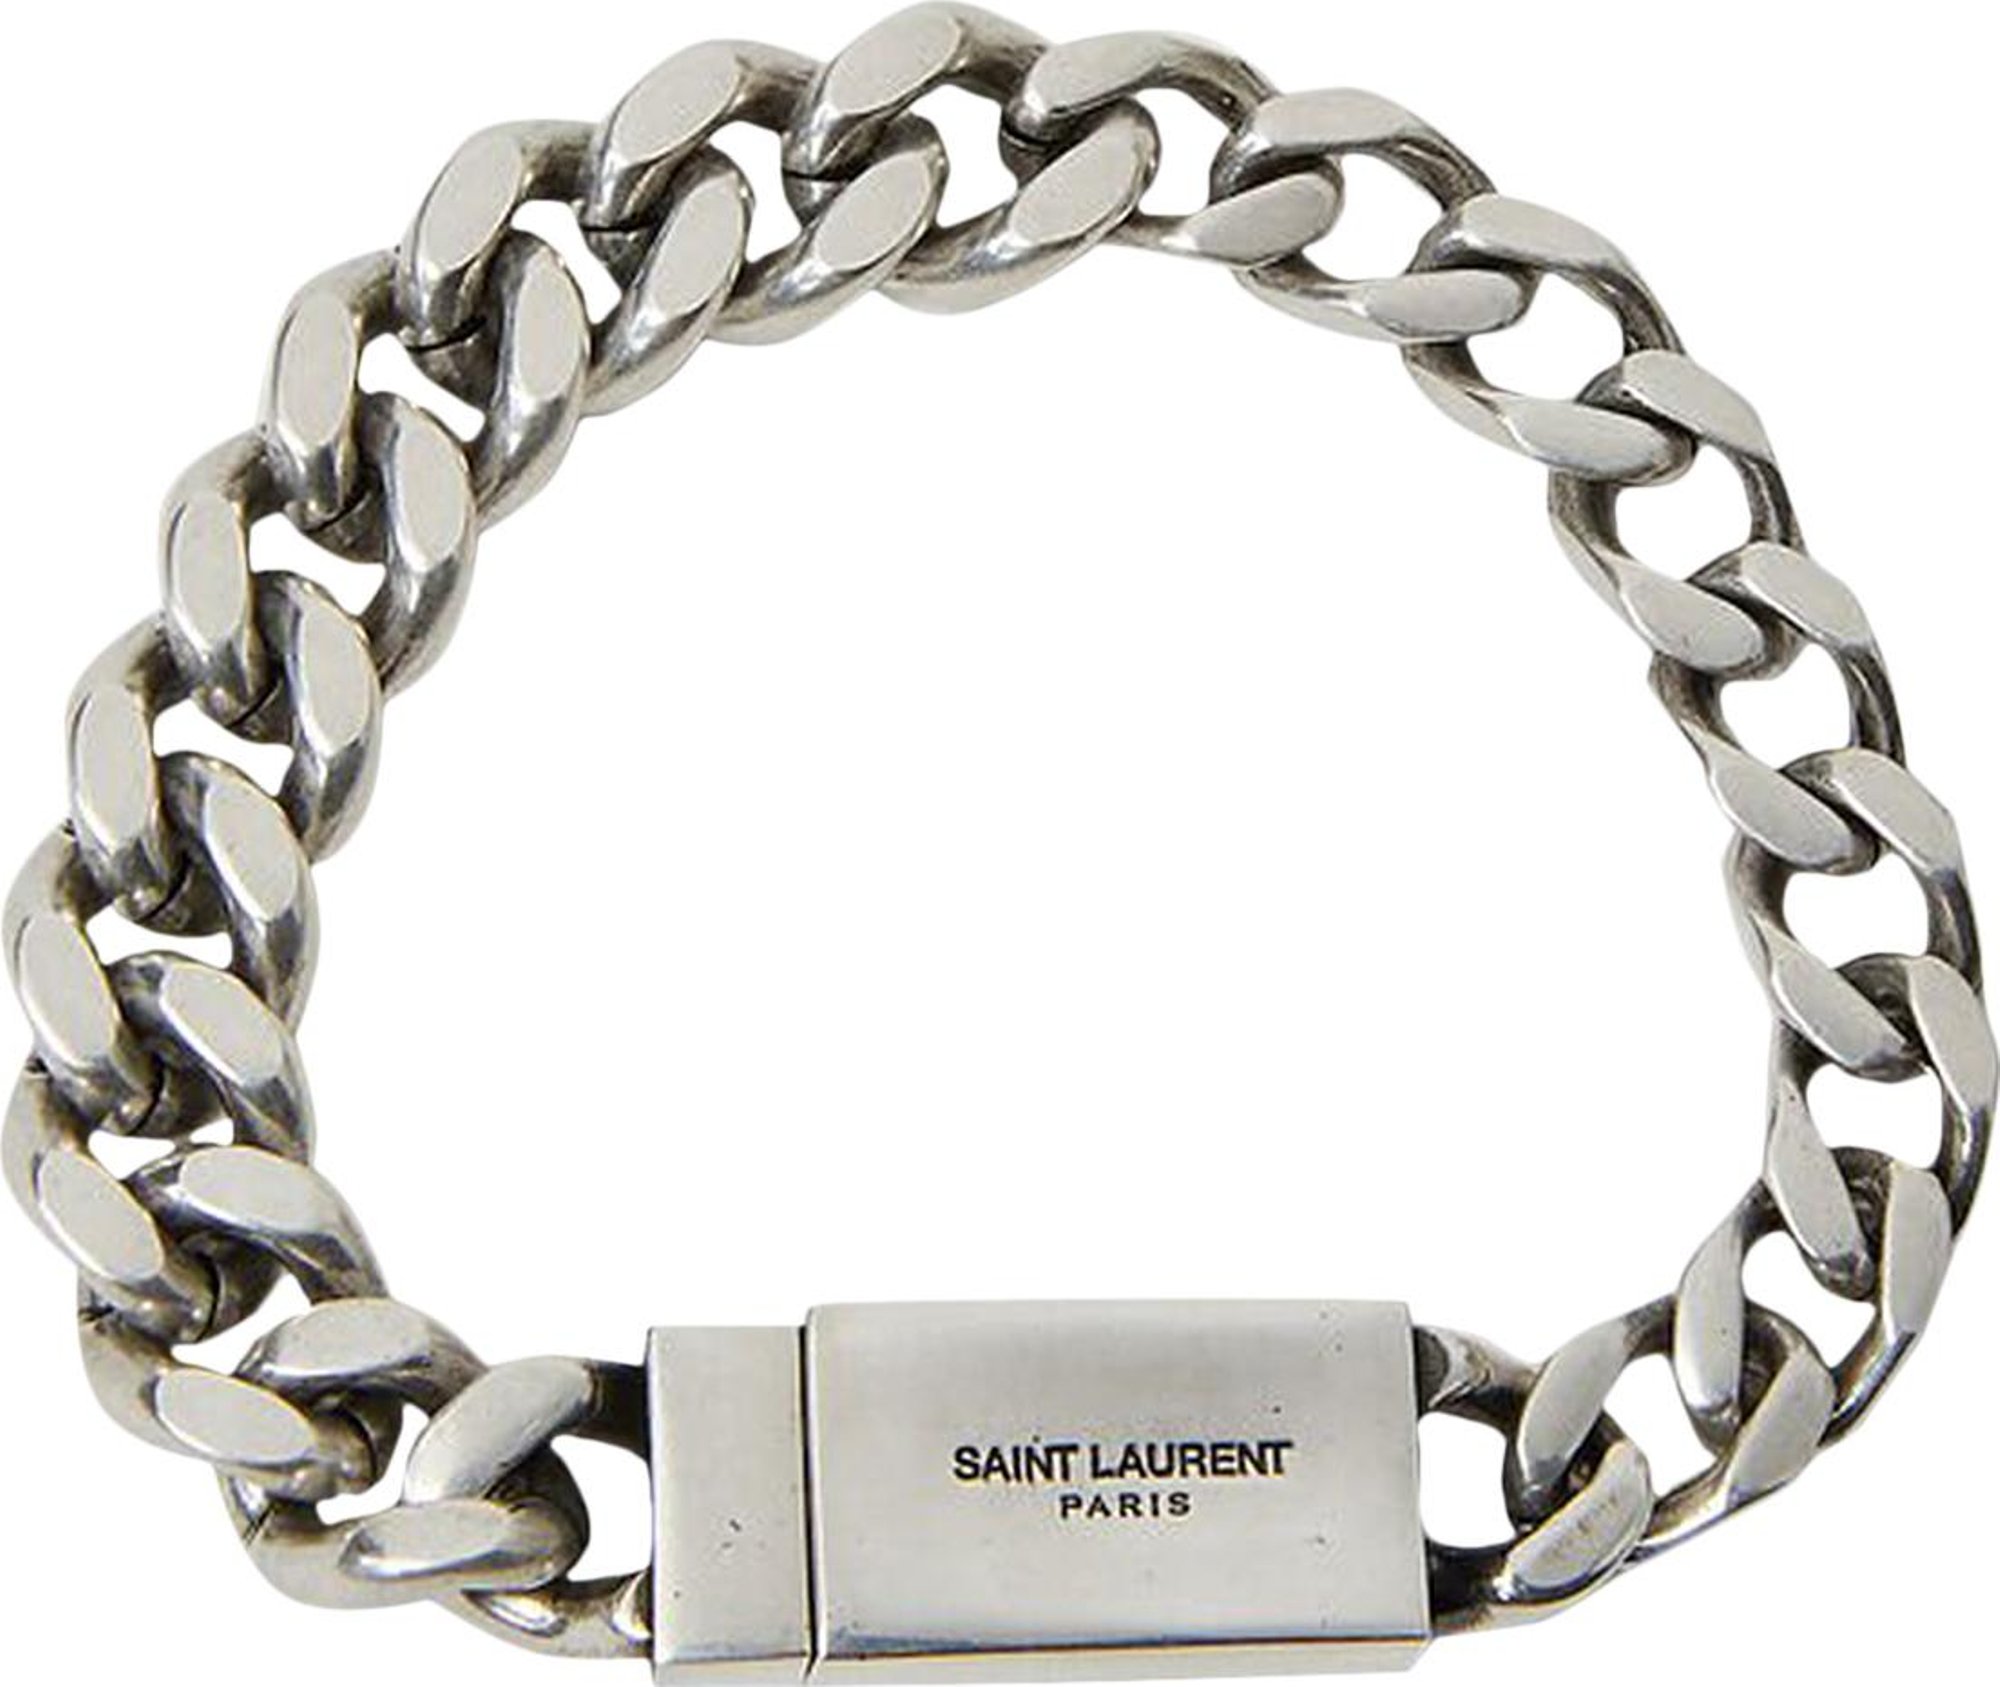 Buy Saint Laurent Curb Chain Bracelet 'Silver' - 731208 Y1500 8142 | GOAT